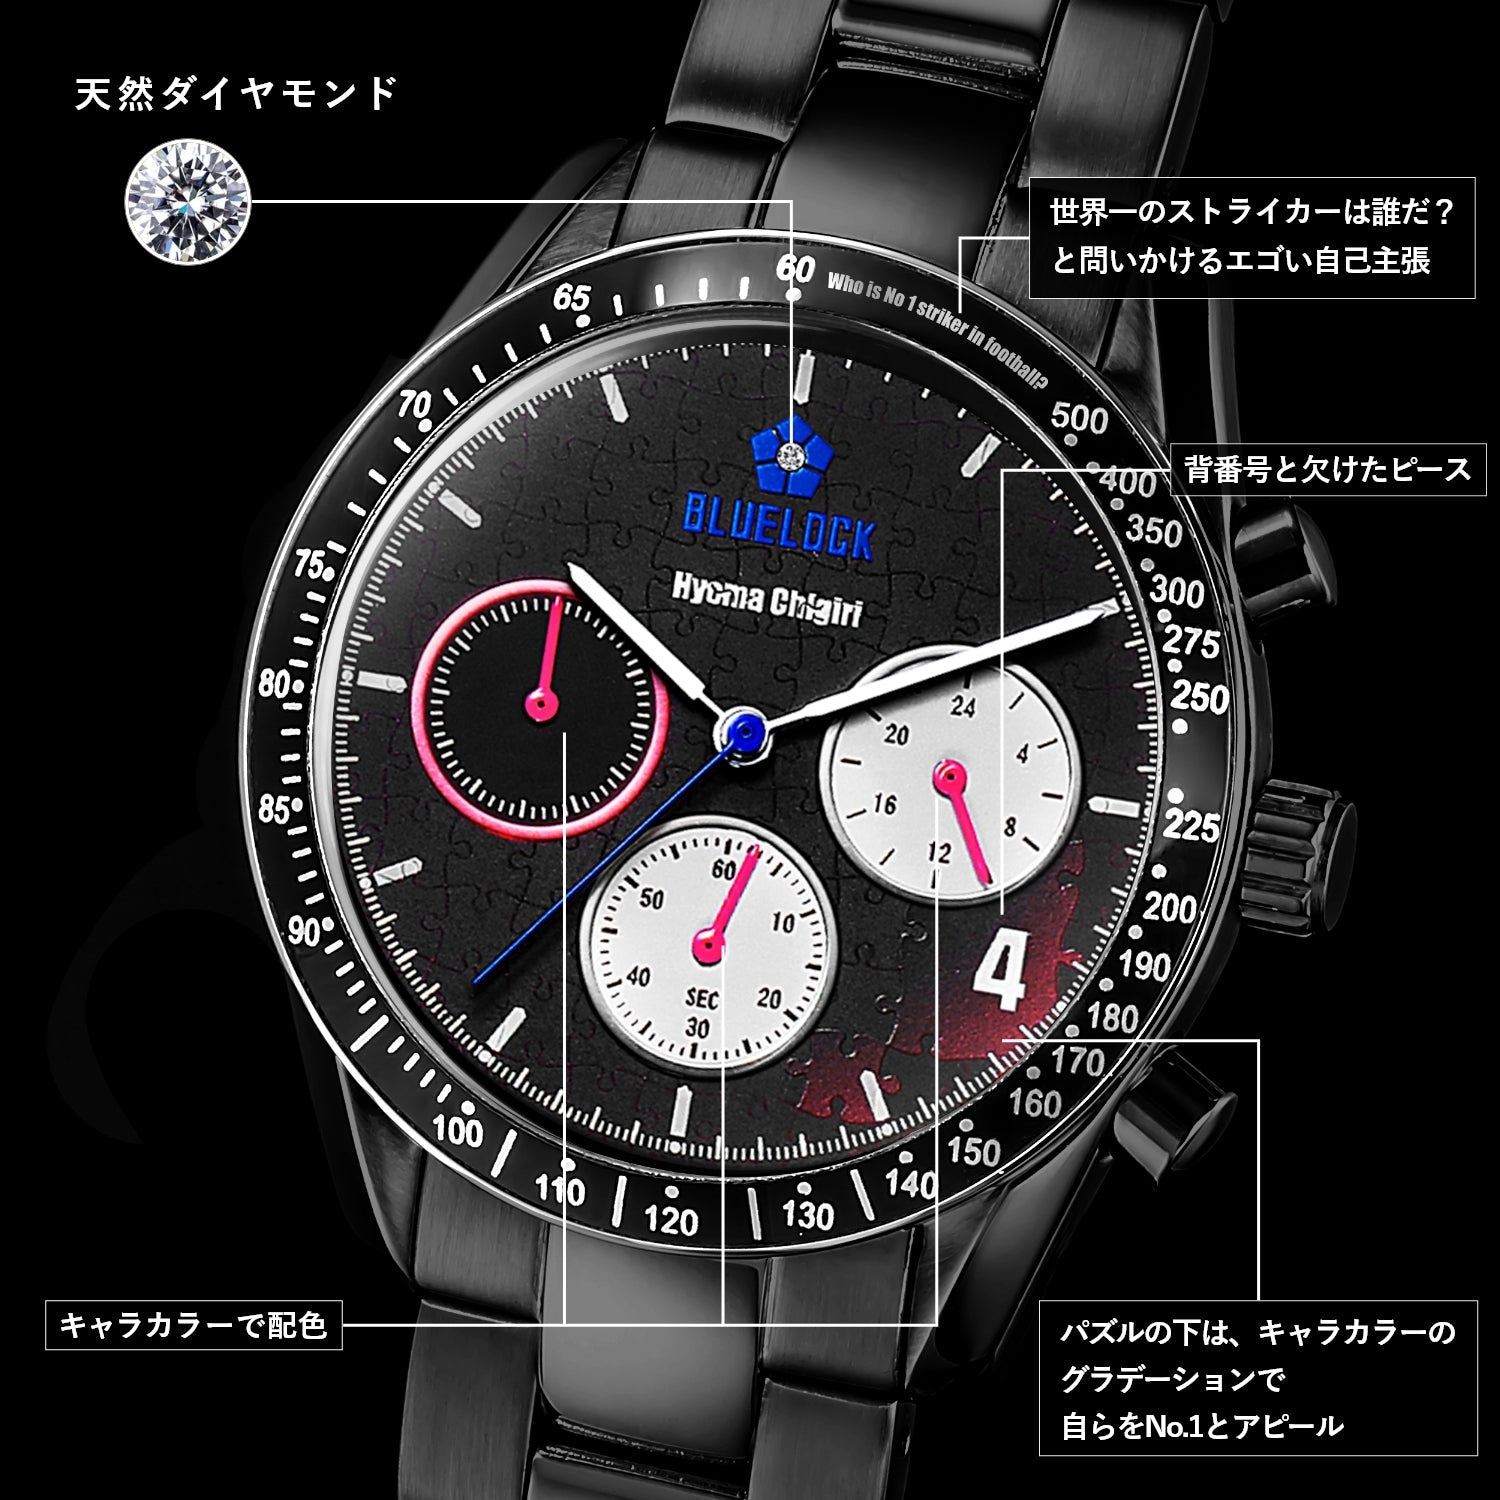 テレビアニメ「ブルーロック」オフィシャルクロノグラフ腕時計 千切 豹馬 - 公式通販サイト「アニメコレクション/Anime Collection」